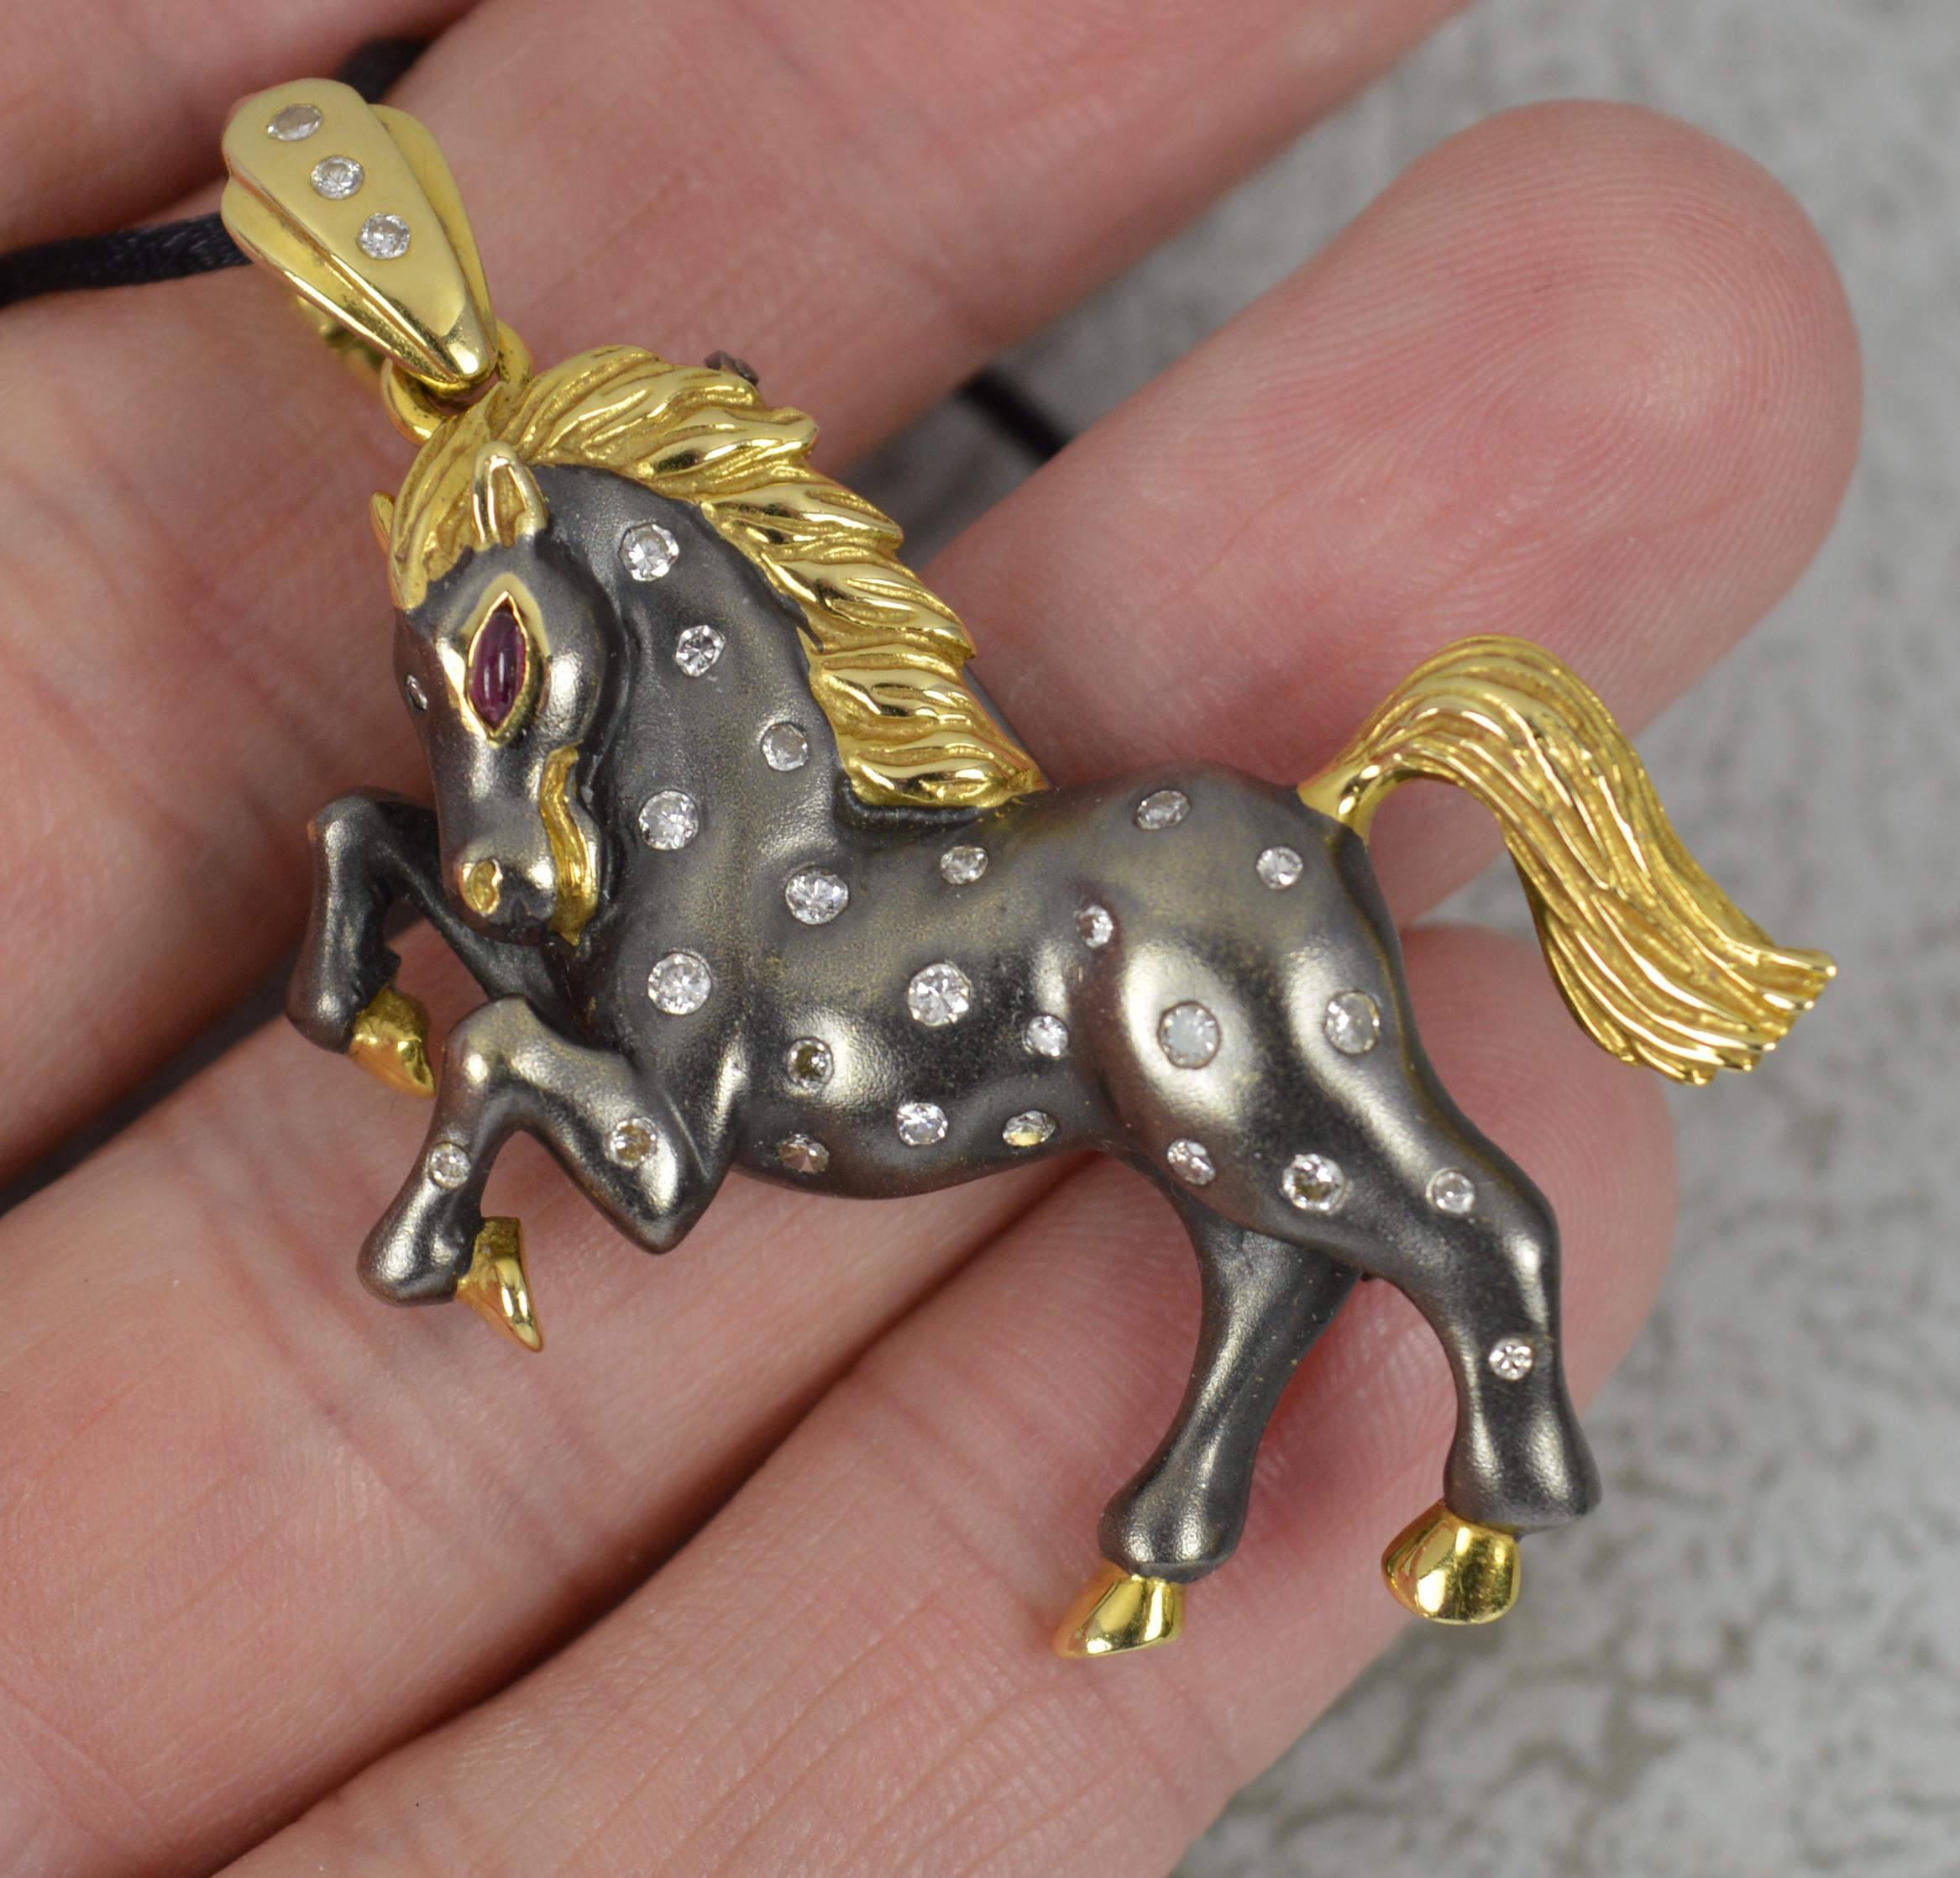 matt's horse necklace